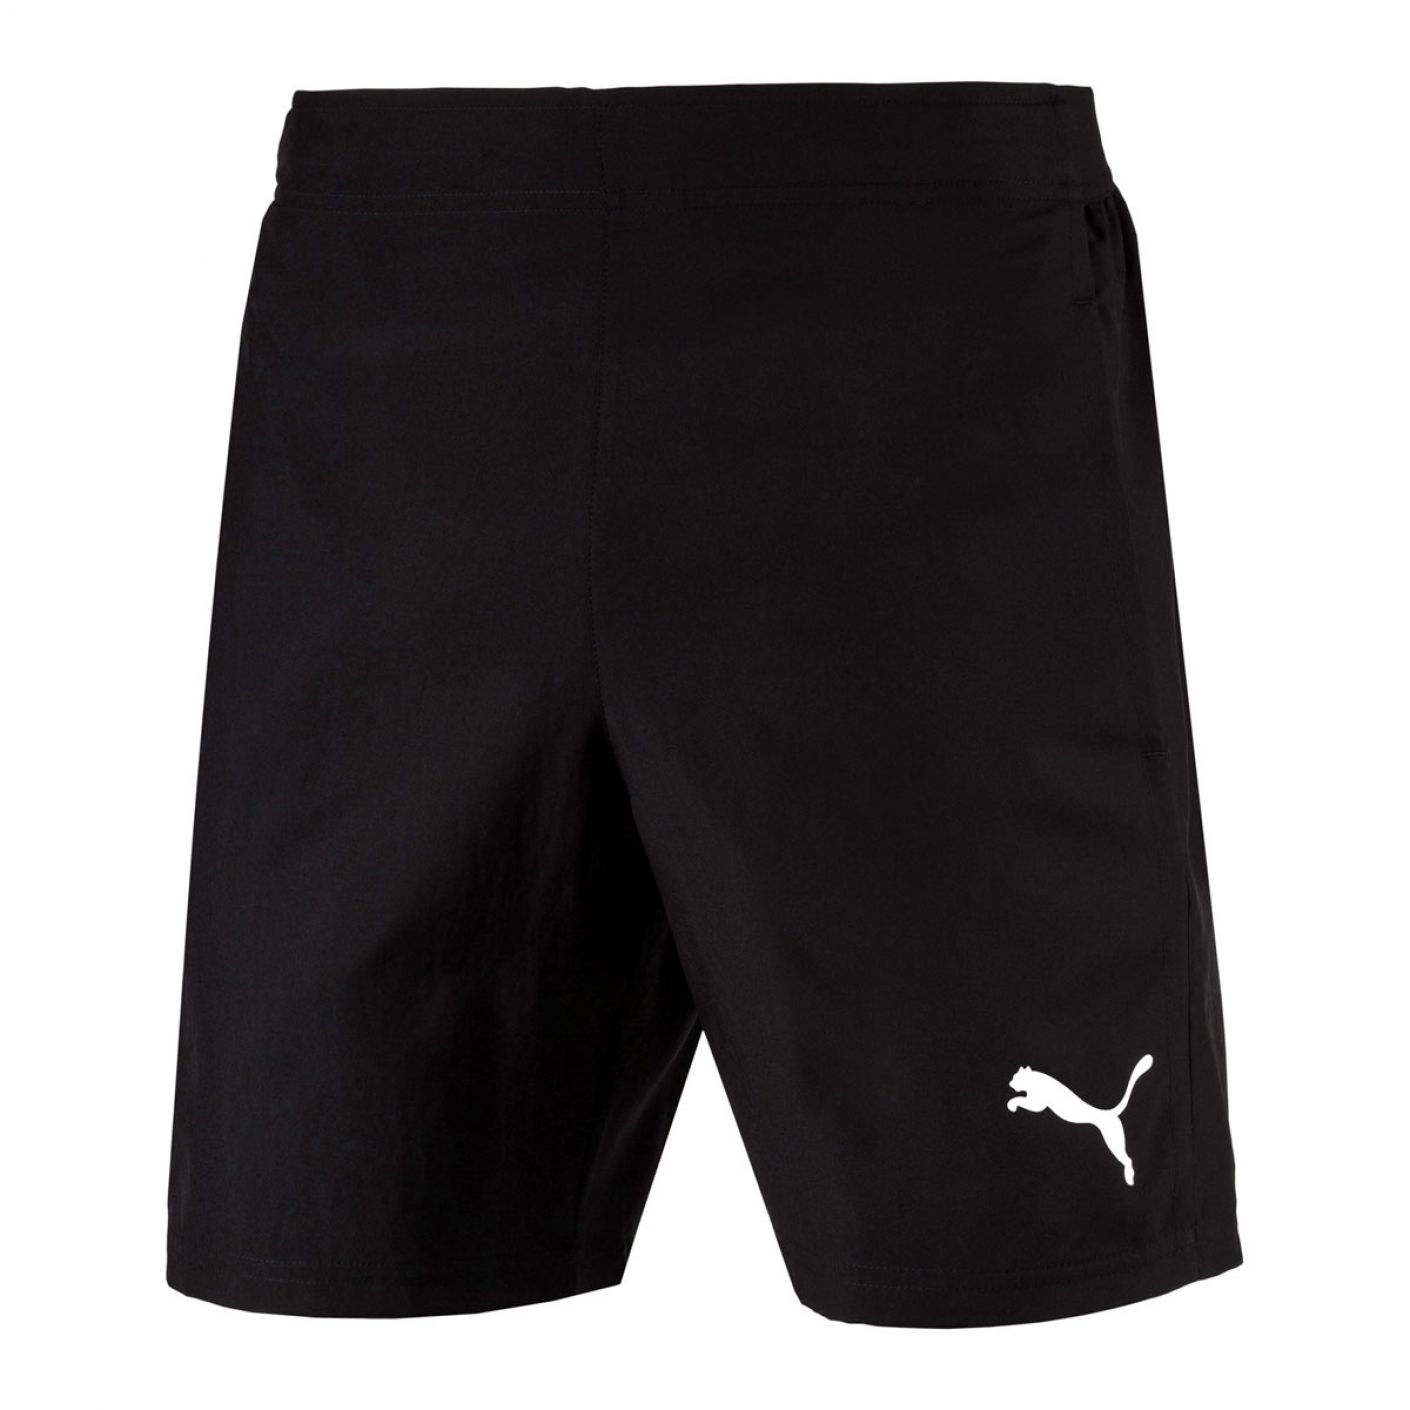 Puma - Liga sideline woven shorts # 03 655318